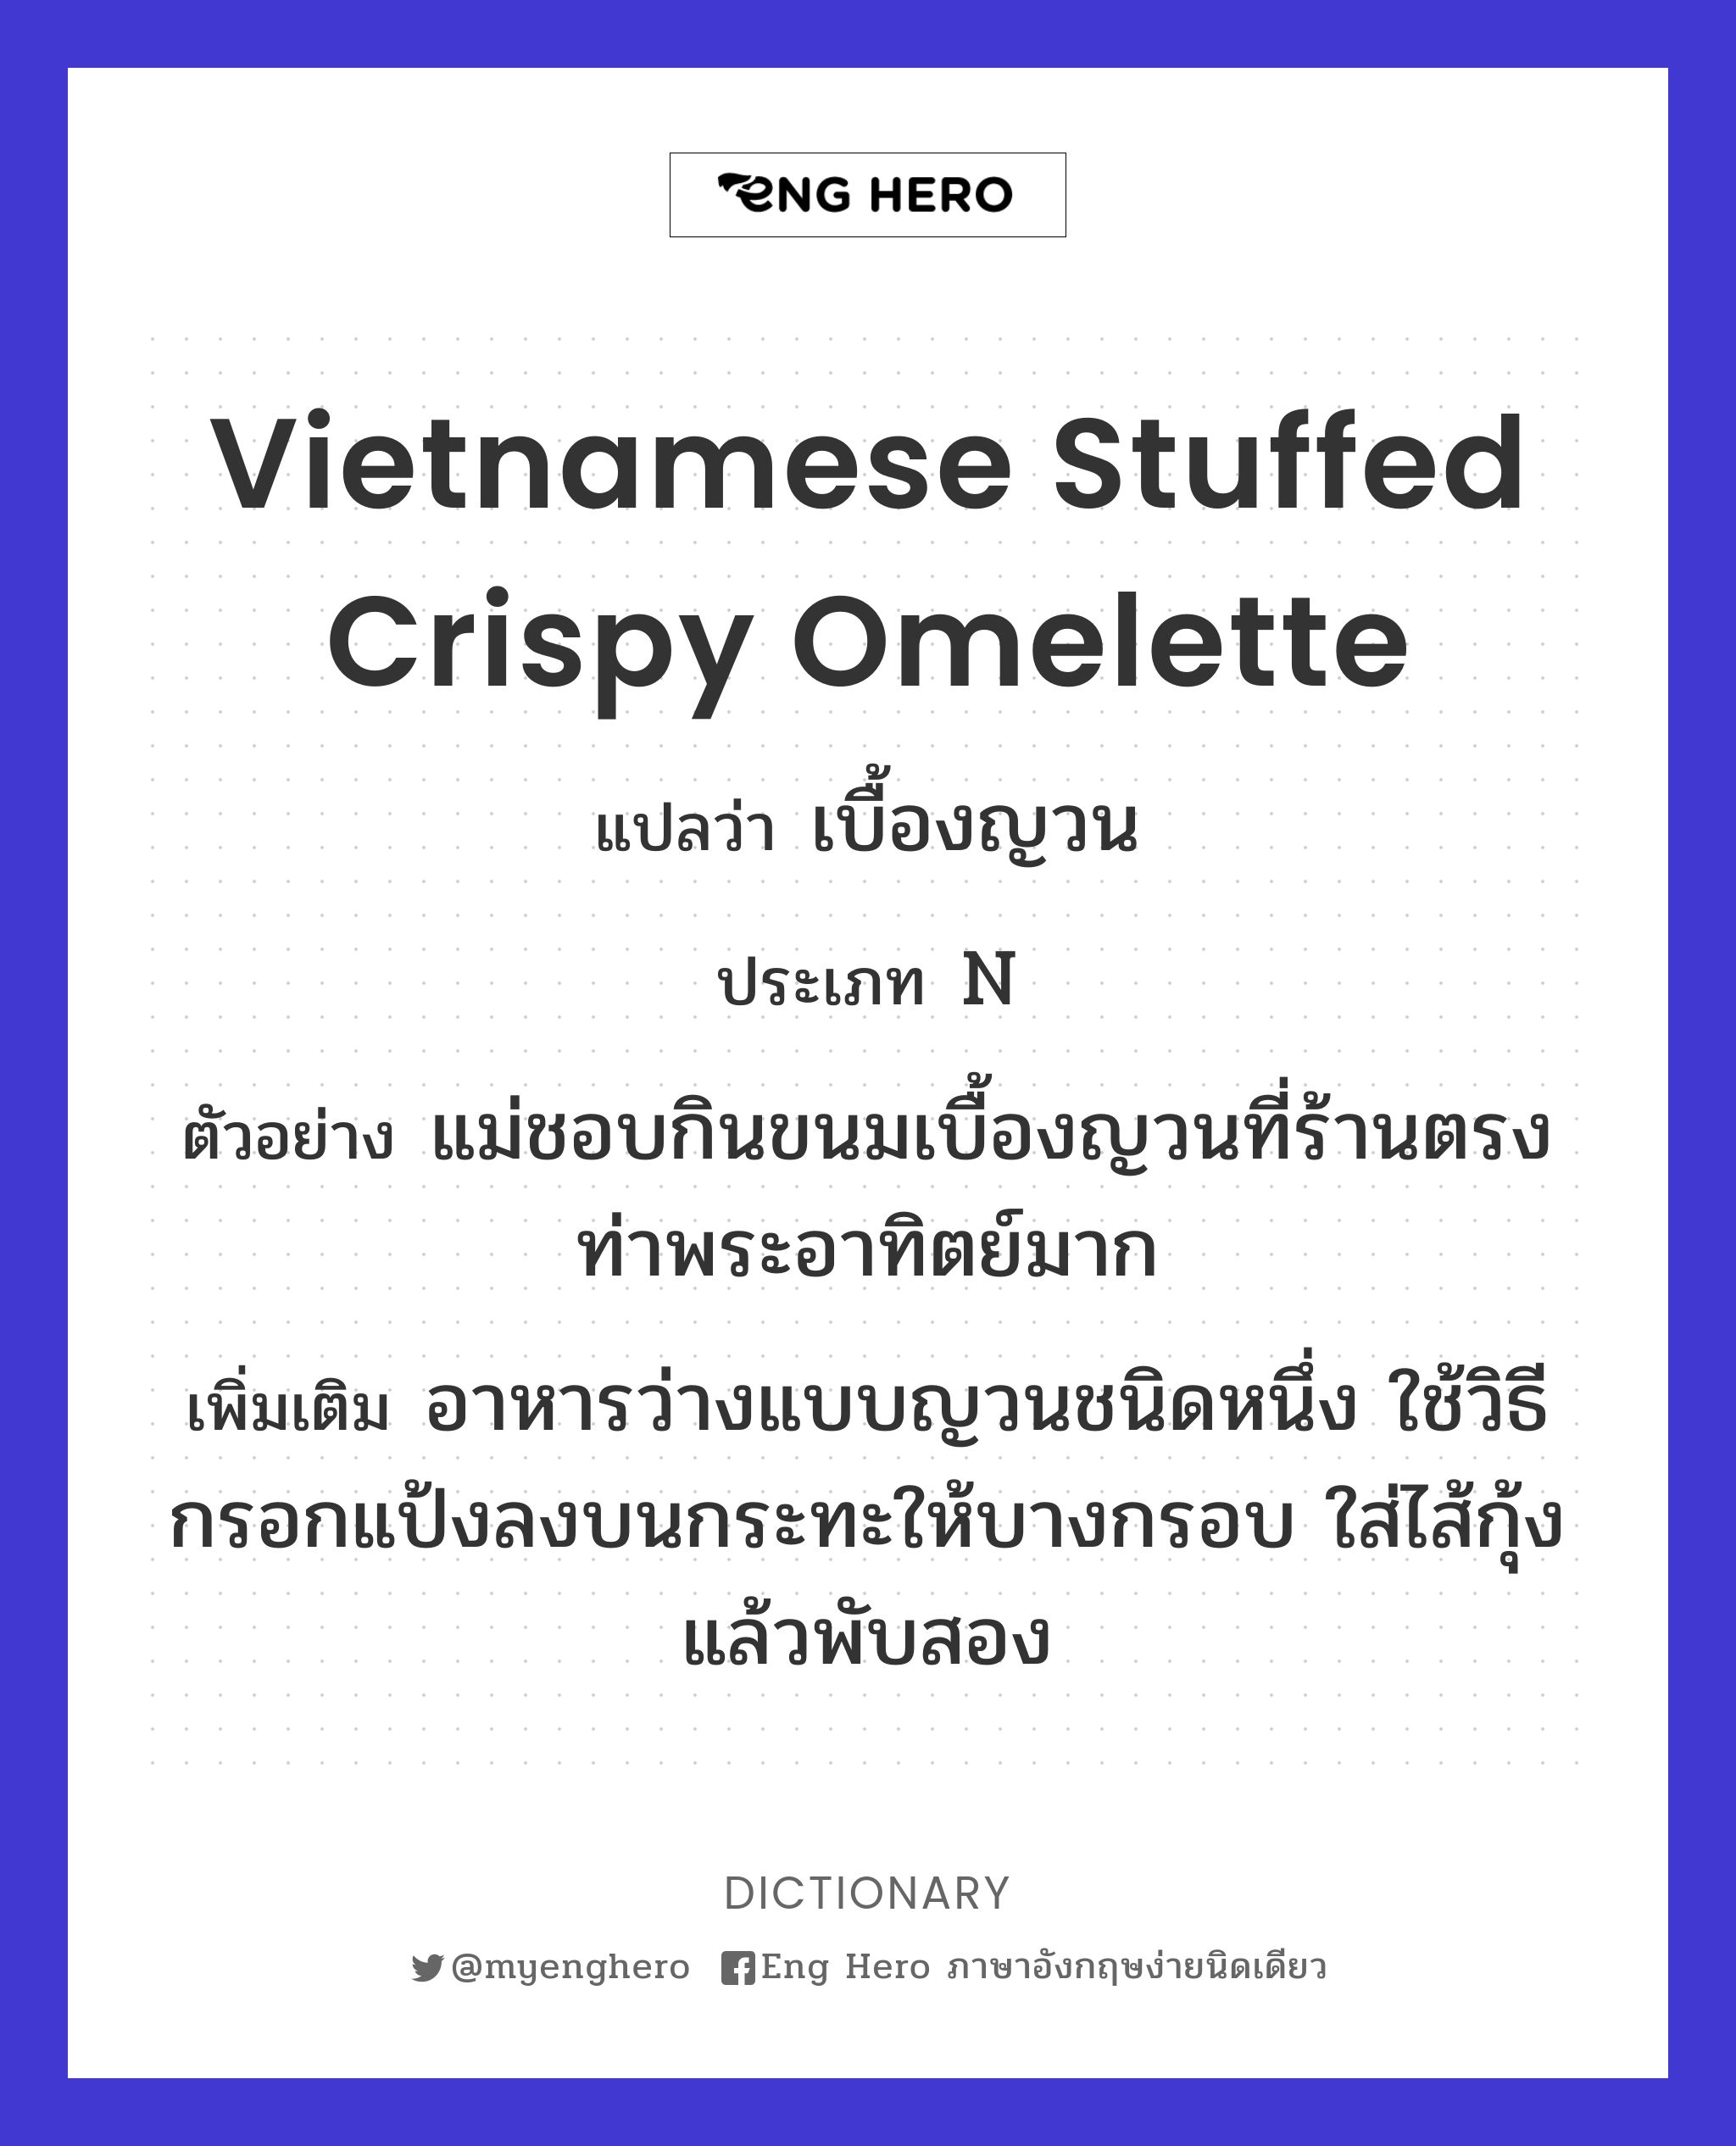 Vietnamese stuffed crispy omelette